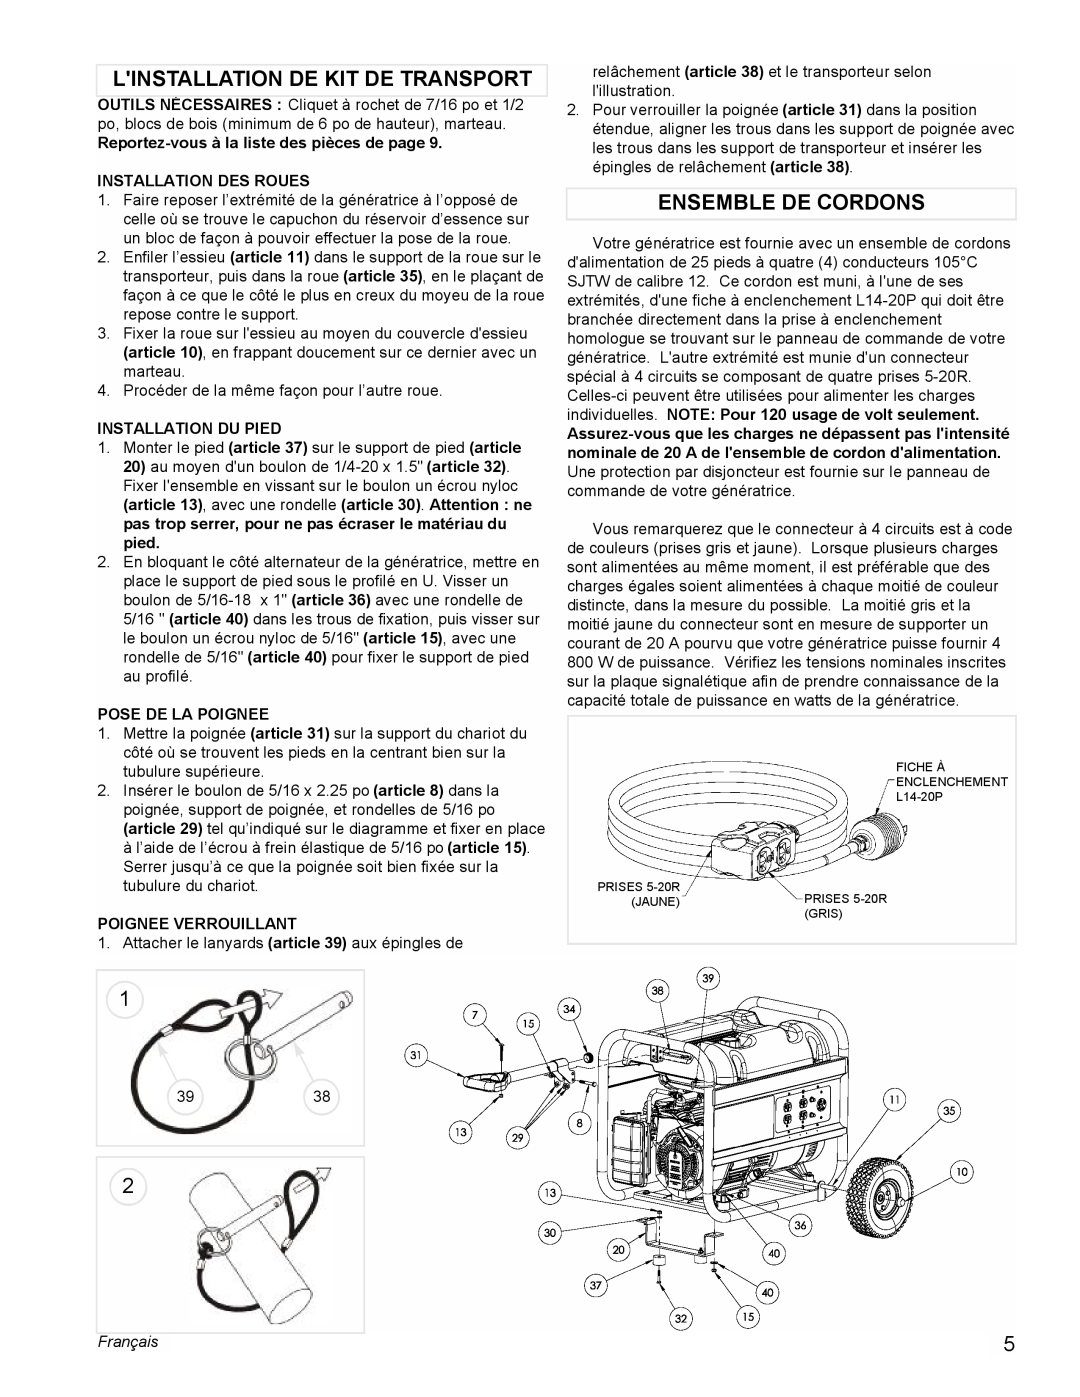 Coleman PM0435005 manual Linstallation De Kit De Transport, Ensemble De Cordons, Reportez-vousà la liste des pièces de page 